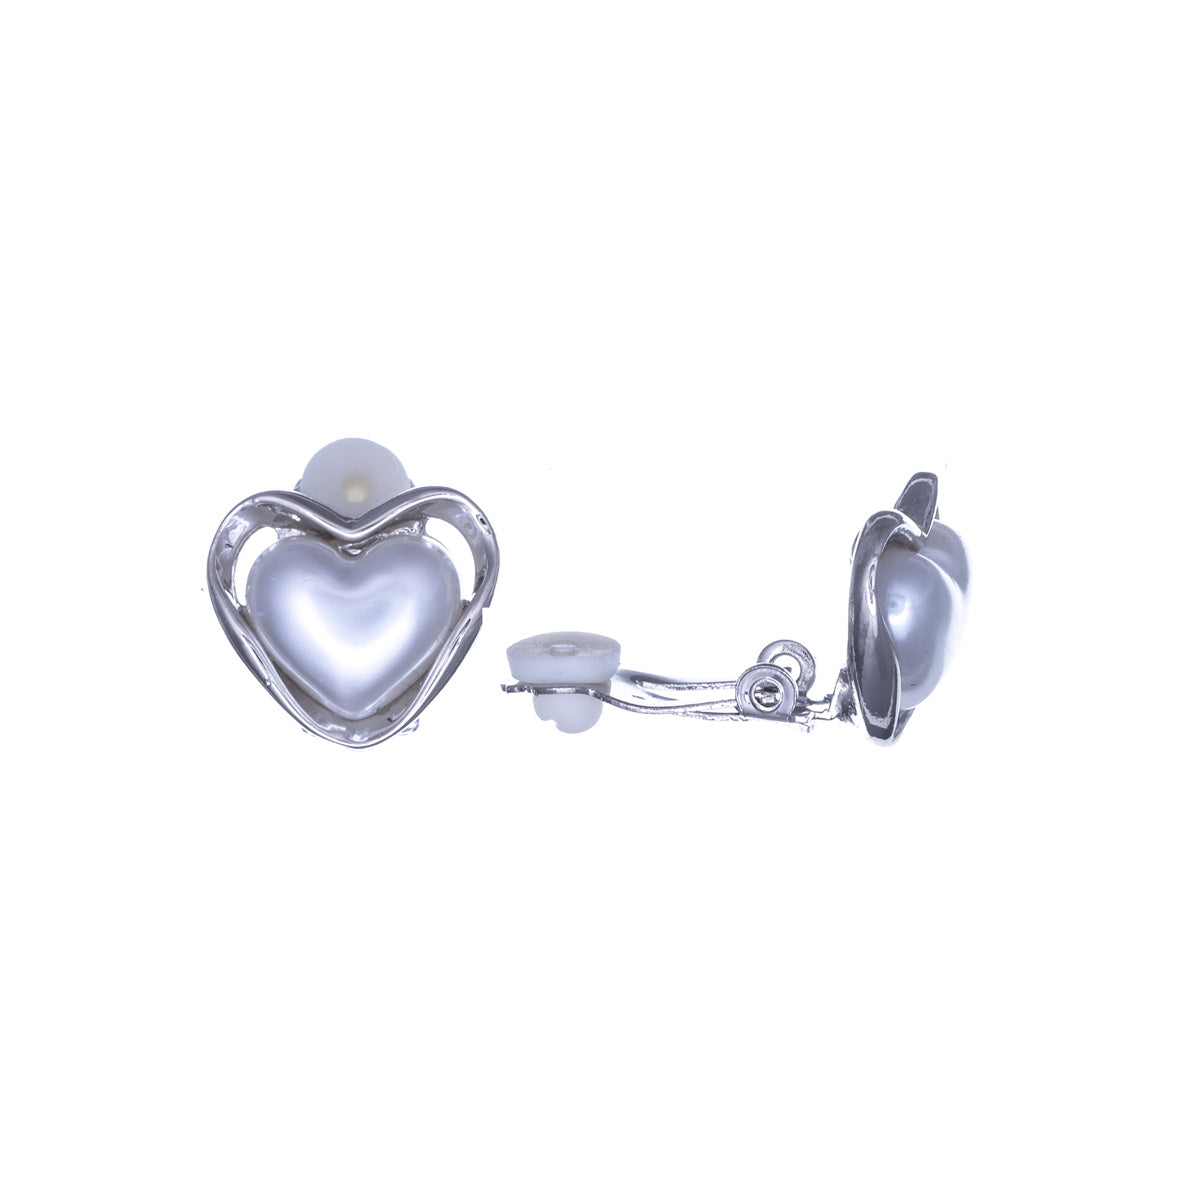 Pearl heart clip earrings